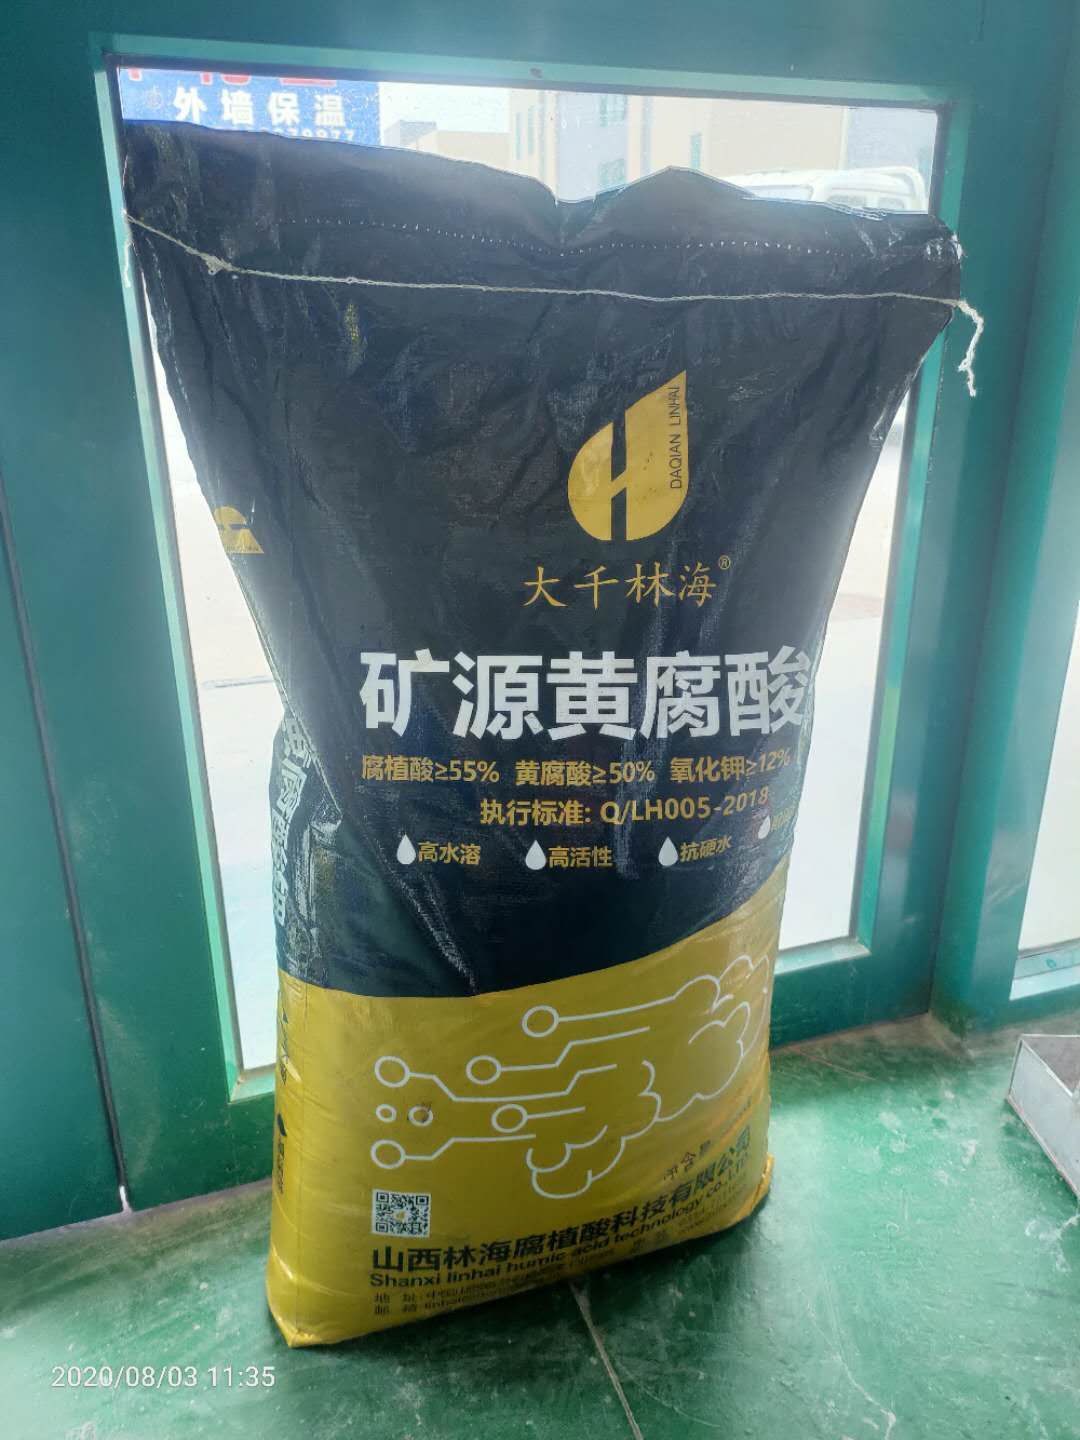 甘肃黄腐酸钾的作用和效果厂家批发瑞锦泰冲施肥厂家批发